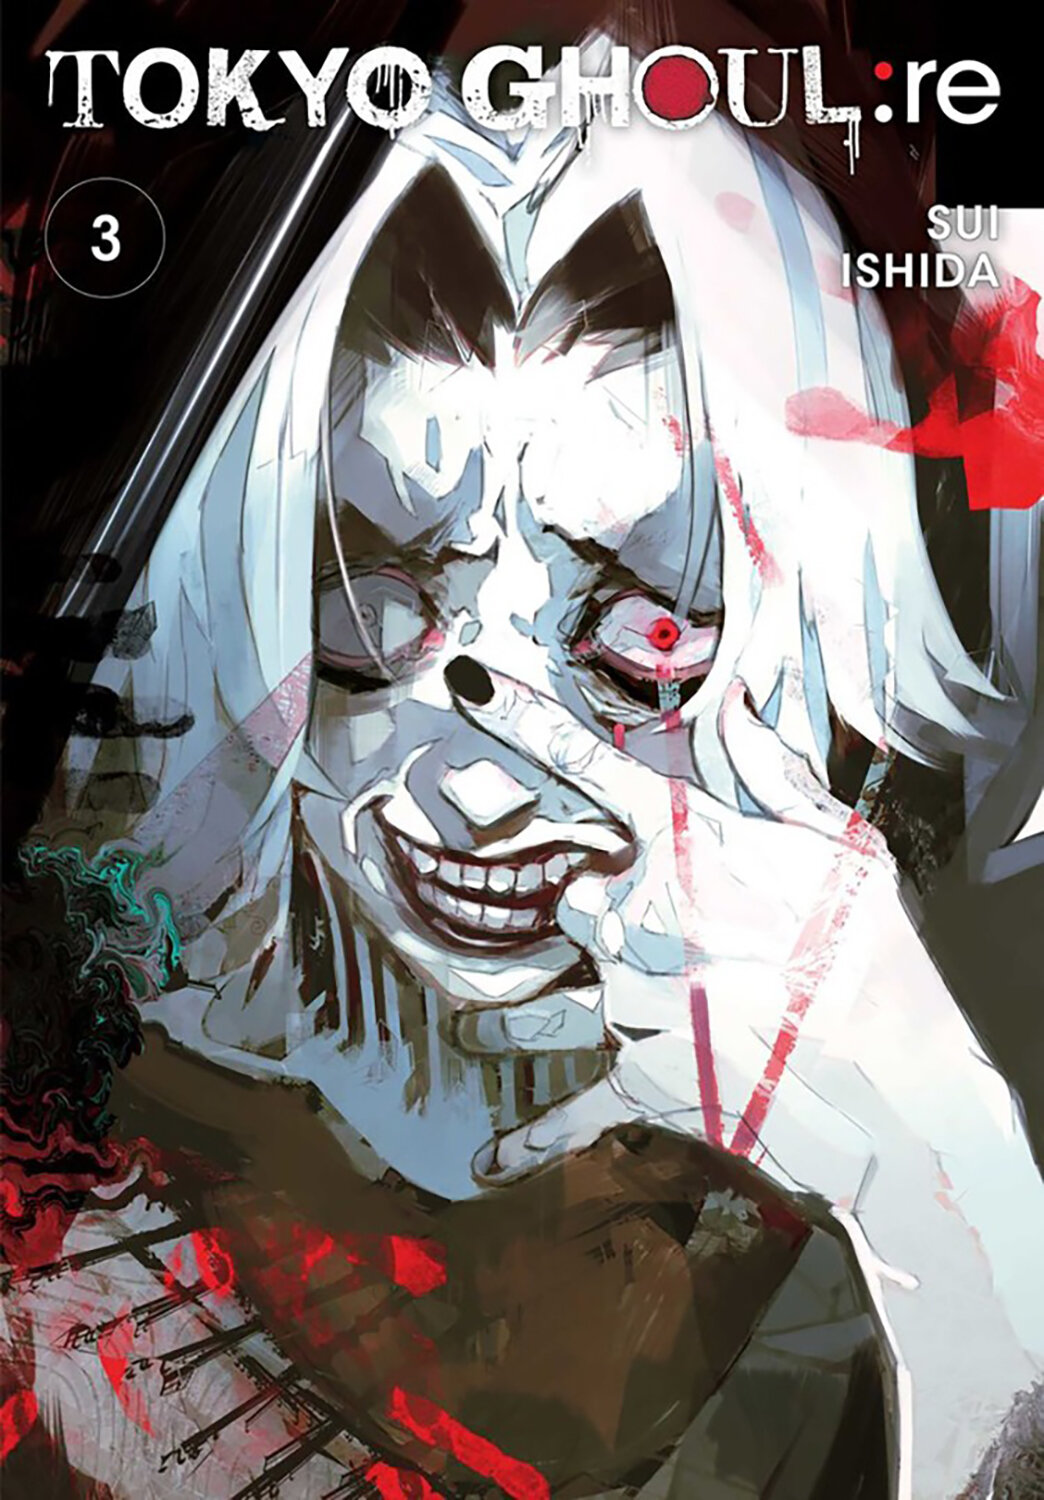 Tokyo Ghoul: re. Volume 3 | Ishida Sui